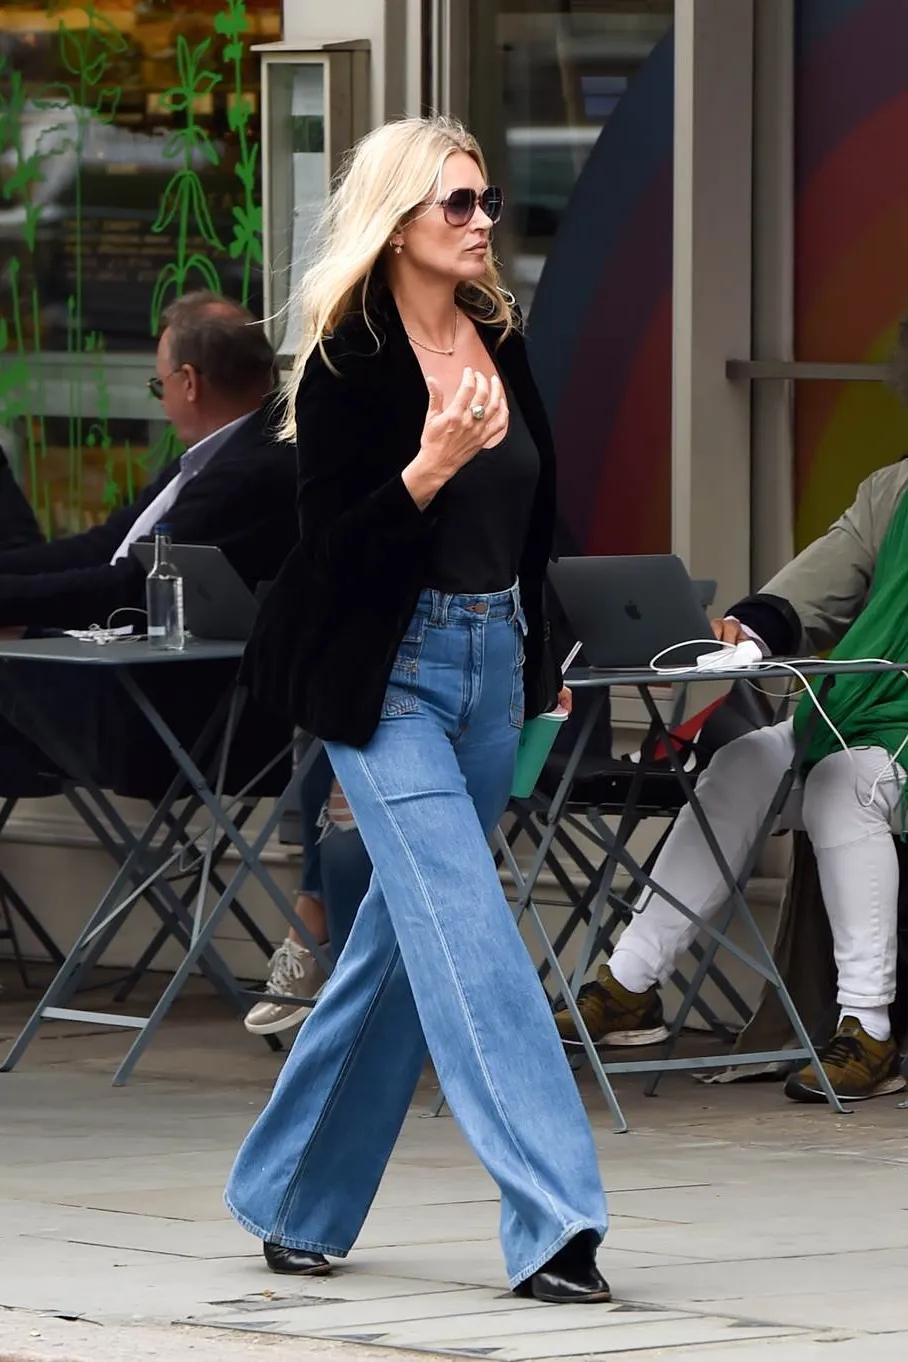 Đẳng cấp thời trang của Kate Moss ở tuổi U50: Phối đồ đơn giản vẫn chuẩn sang xịn mịn - Ảnh 8.